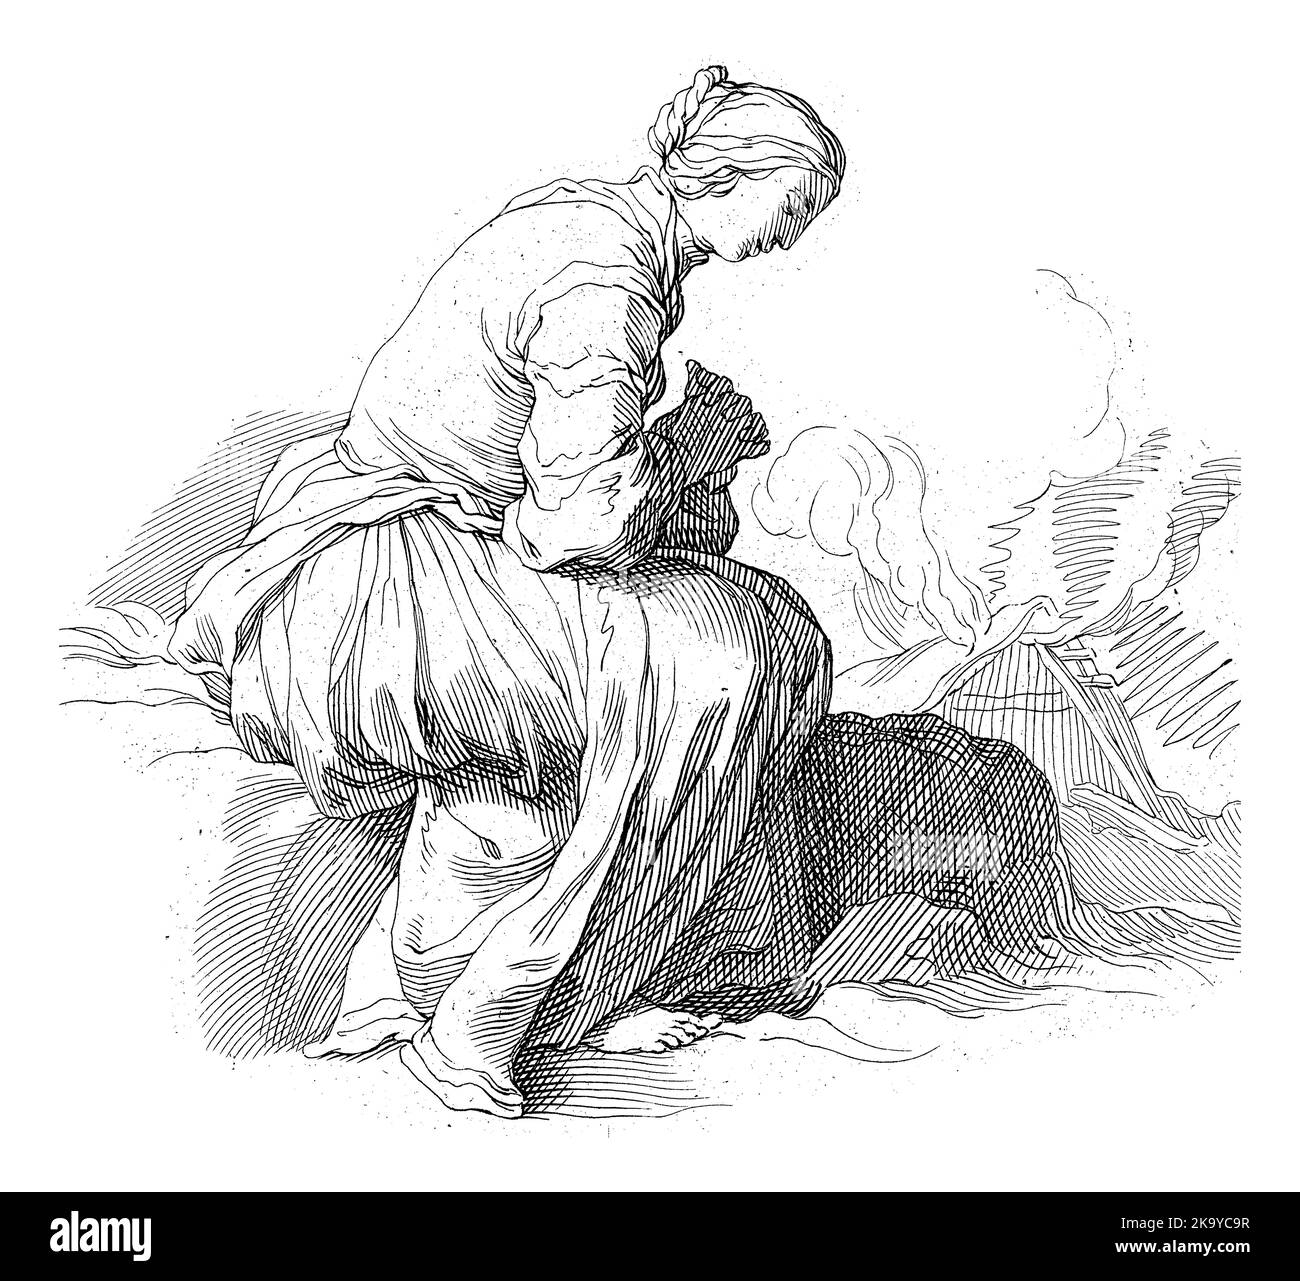 Femme assise avec ses mains repliées dans la prière. En arrière-plan une maison en feu. Banque D'Images